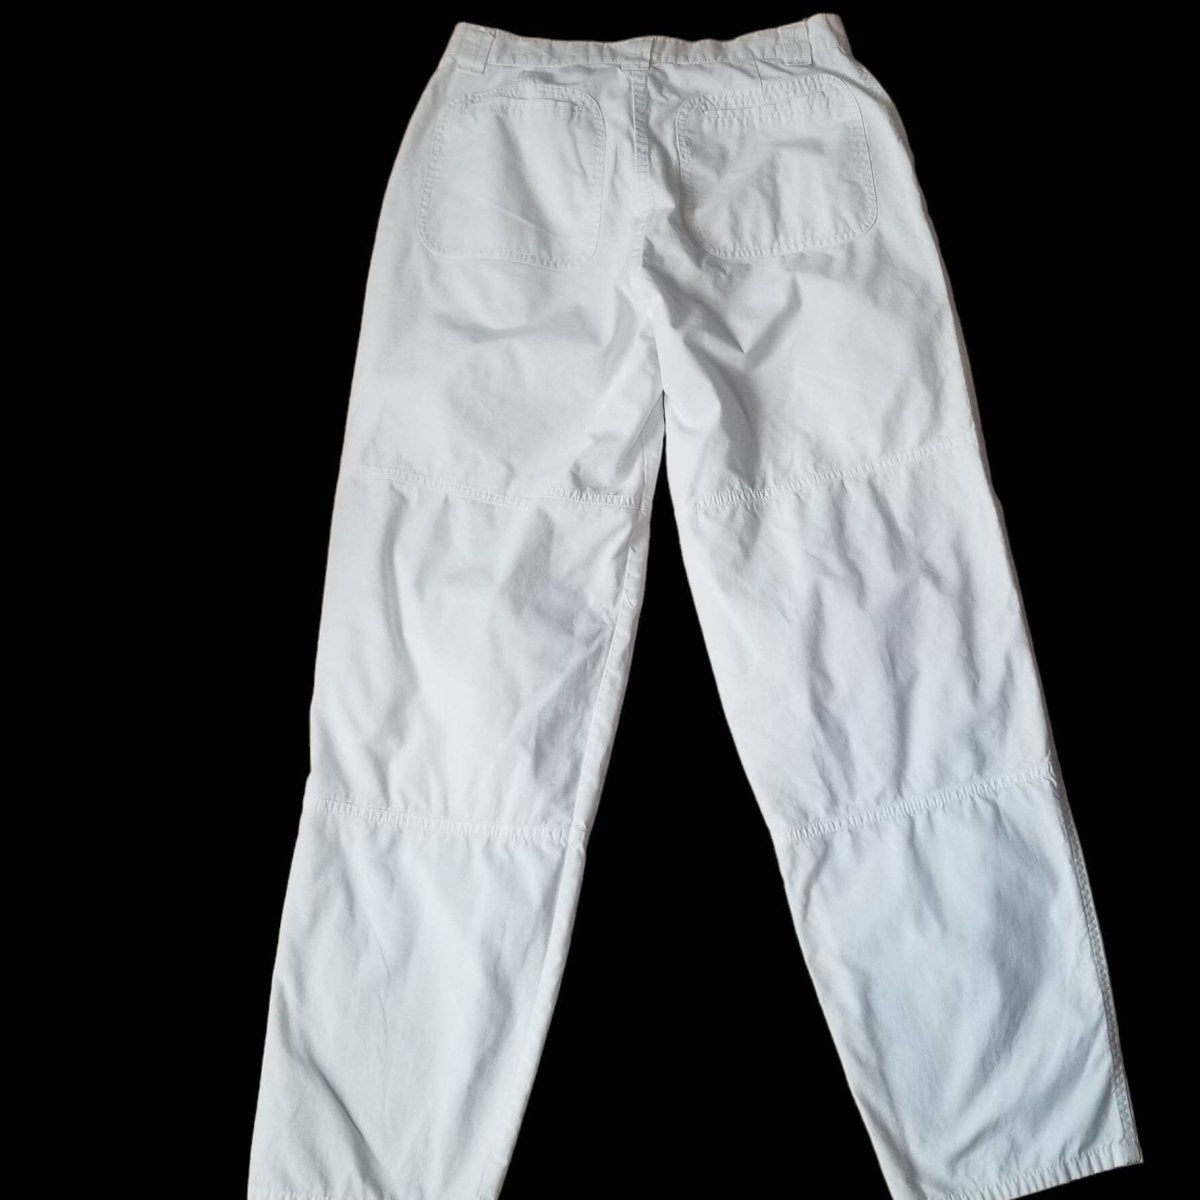 RARE 80s White Cargo Pants Men 31X30 - themallvintage The Mall Vintage